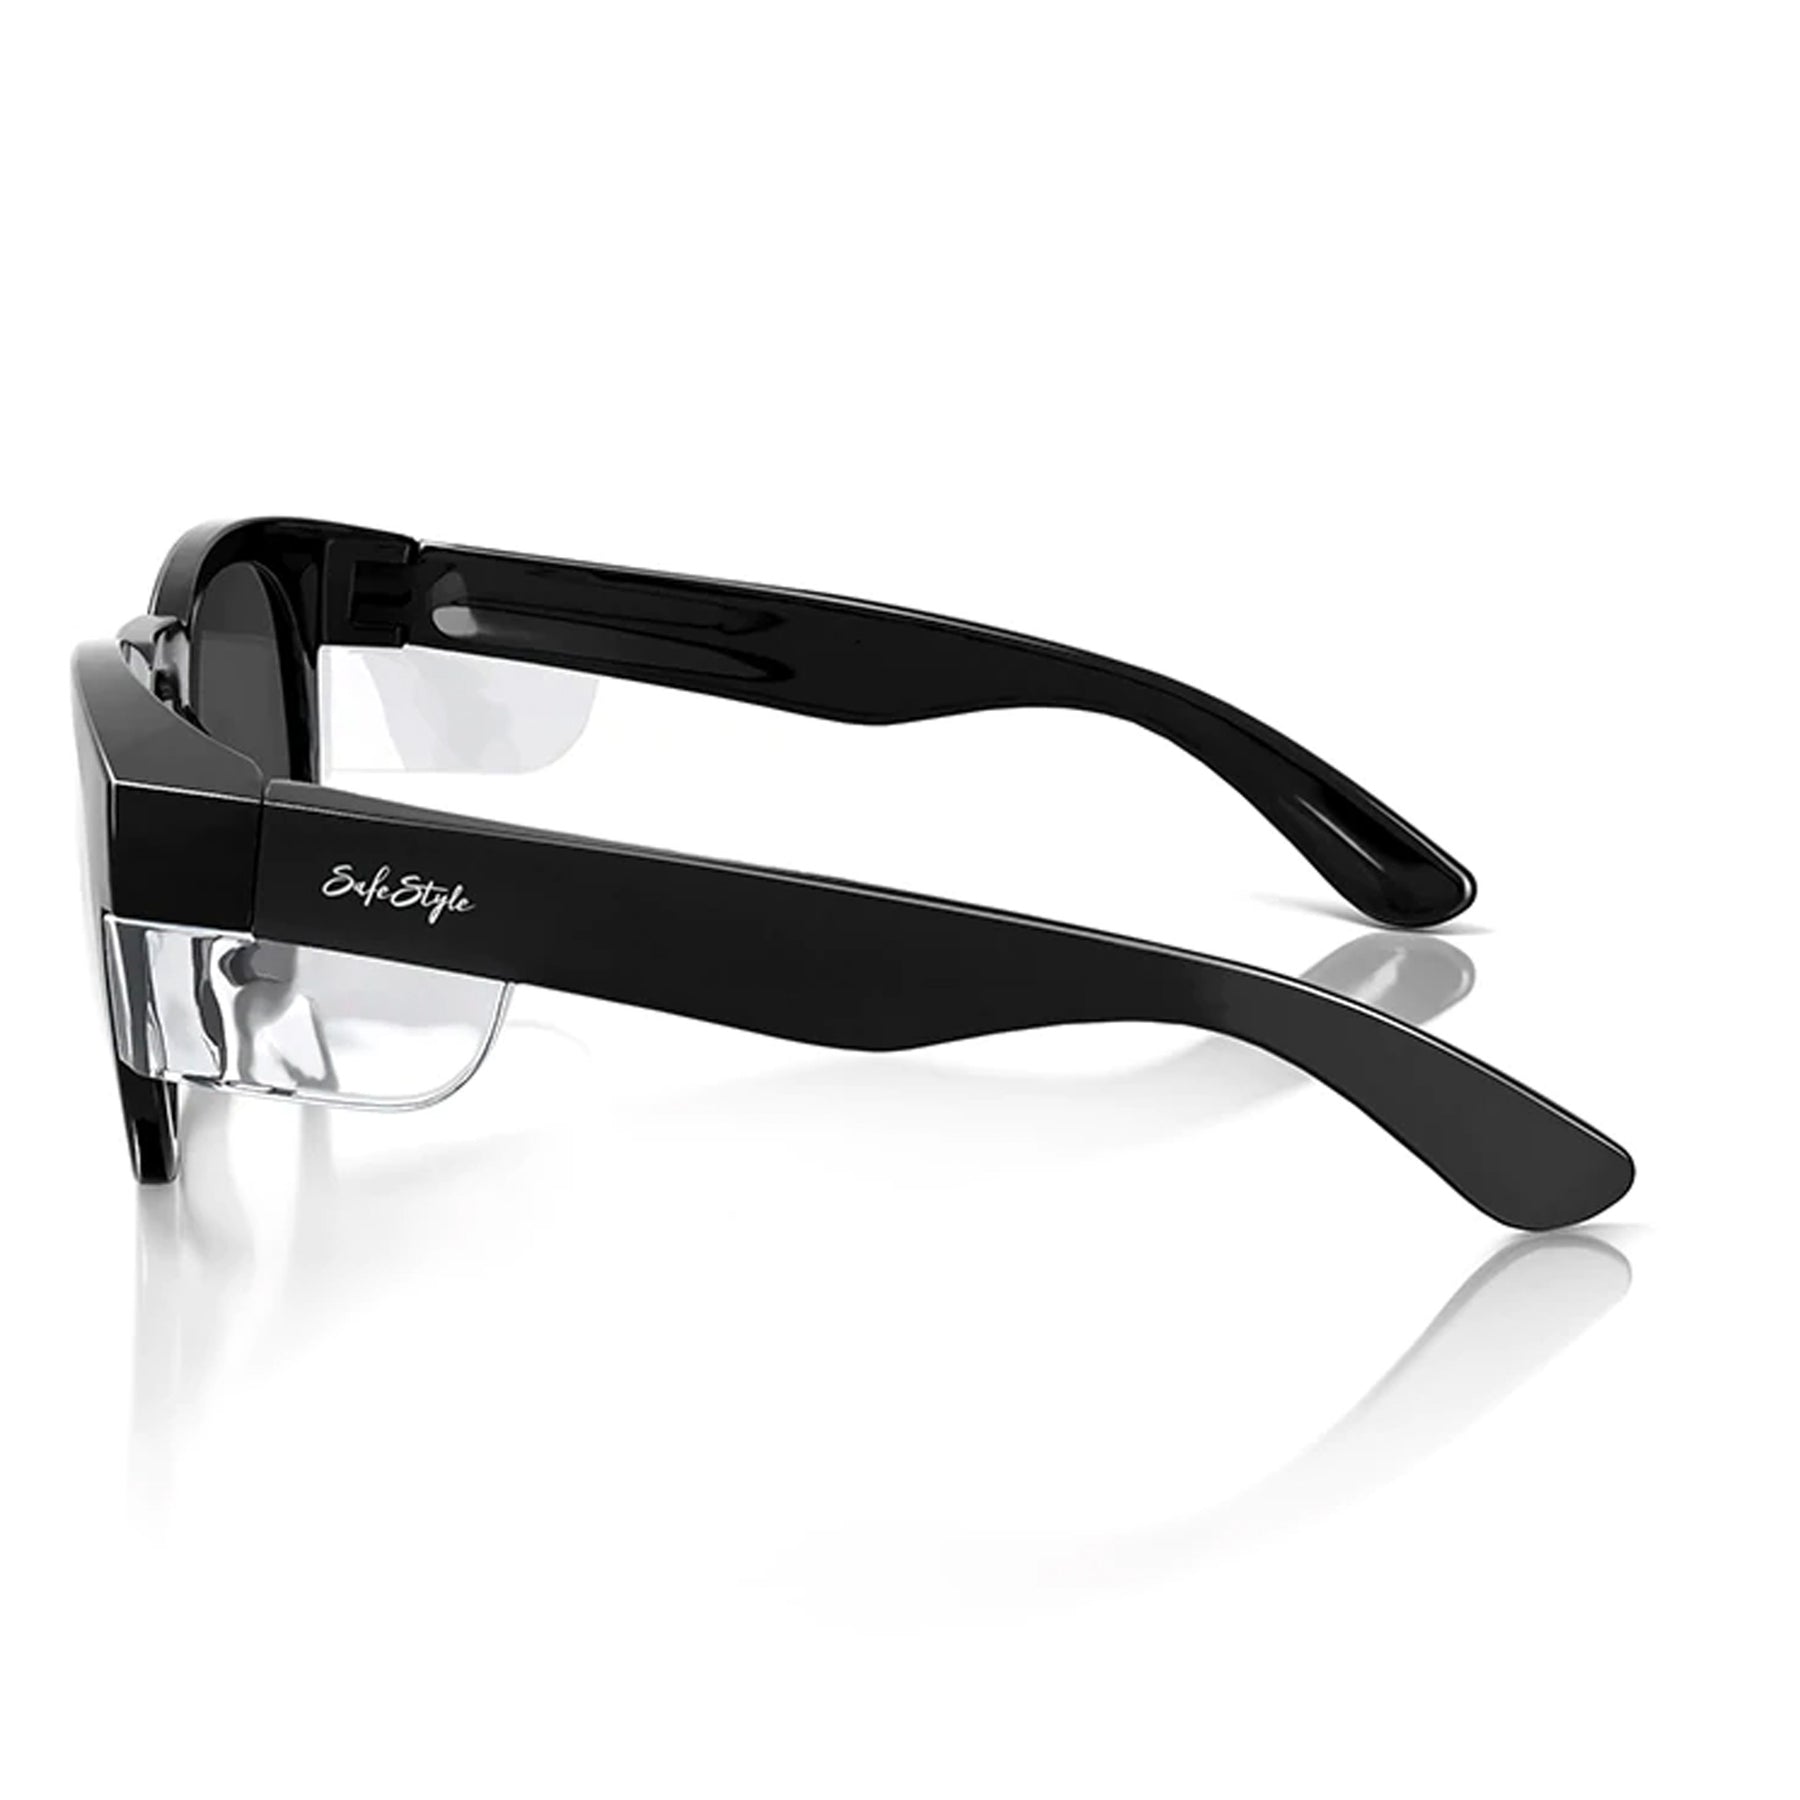 safestyle cruisers black frame polarised uv400 lens glasses